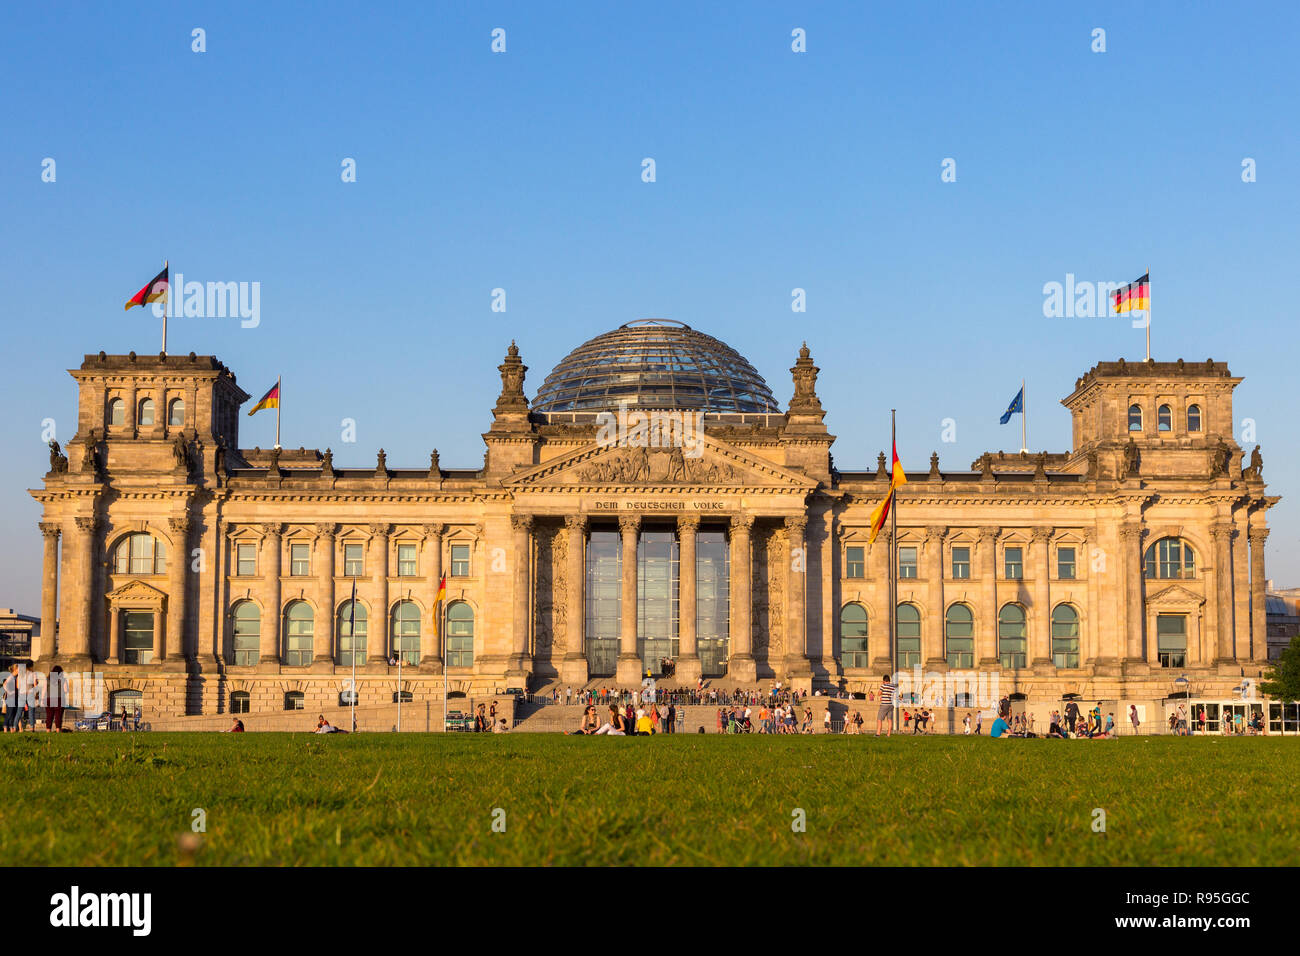 Berlino, Germania - Apr 28, 2018: persone rilassarsi sul prato di fronte al Reichstag, sede del Parlamento tedesco (Deutscher Bundestag). Foto Stock